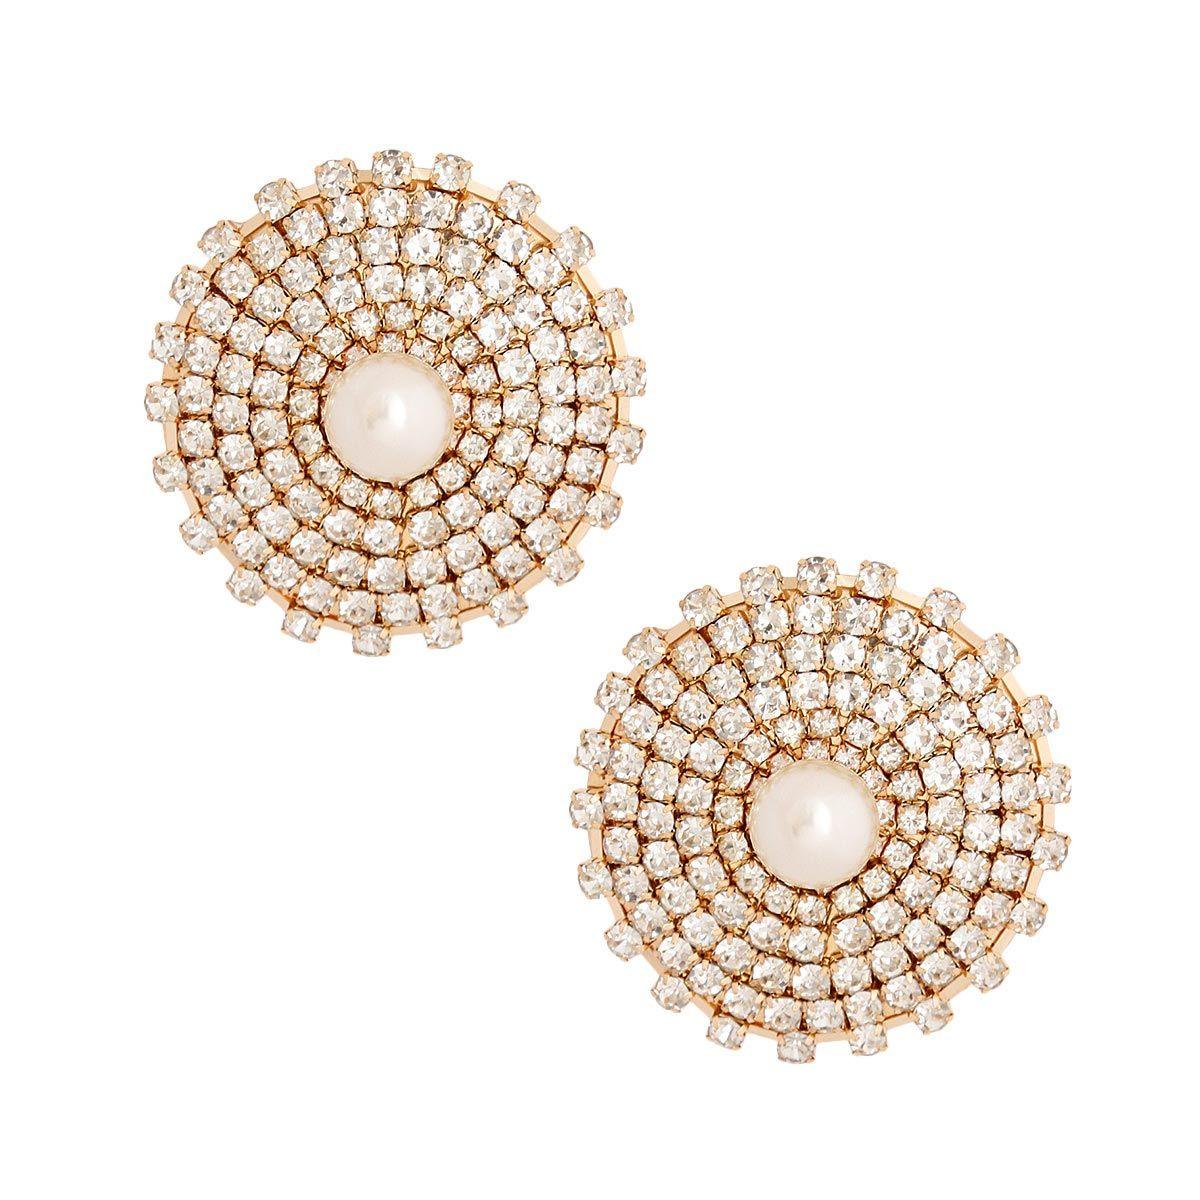 Costume Jewelry: Gold Cream Pearl and Rhinestone Stud Earrings